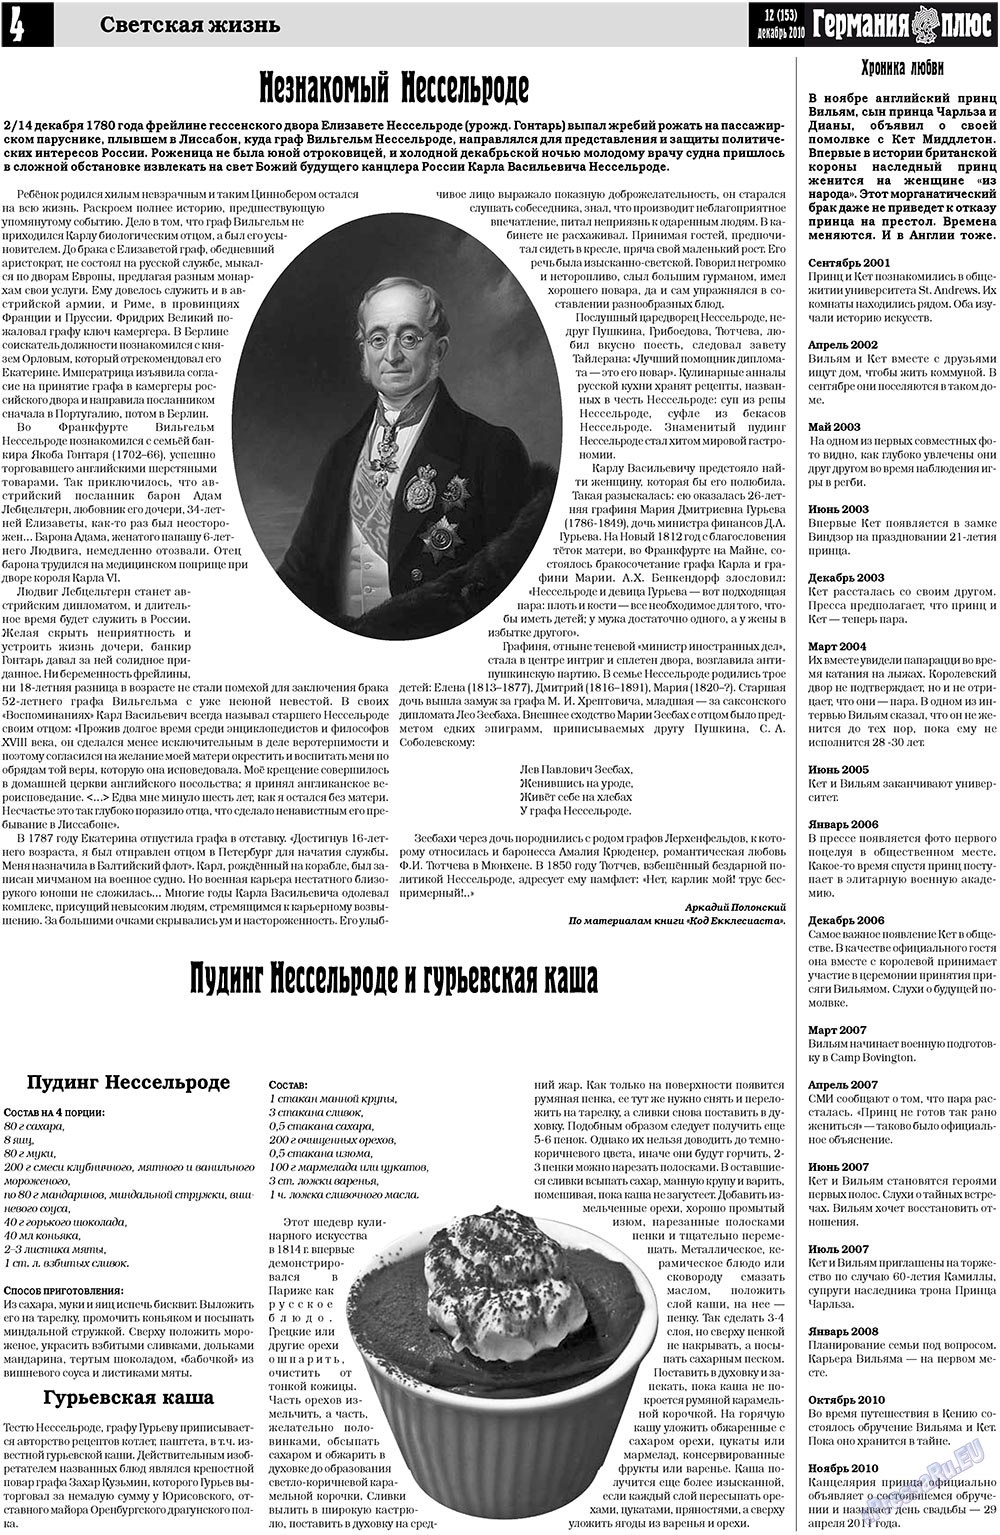 Германия плюс (газета). 2010 год, номер 12, стр. 4